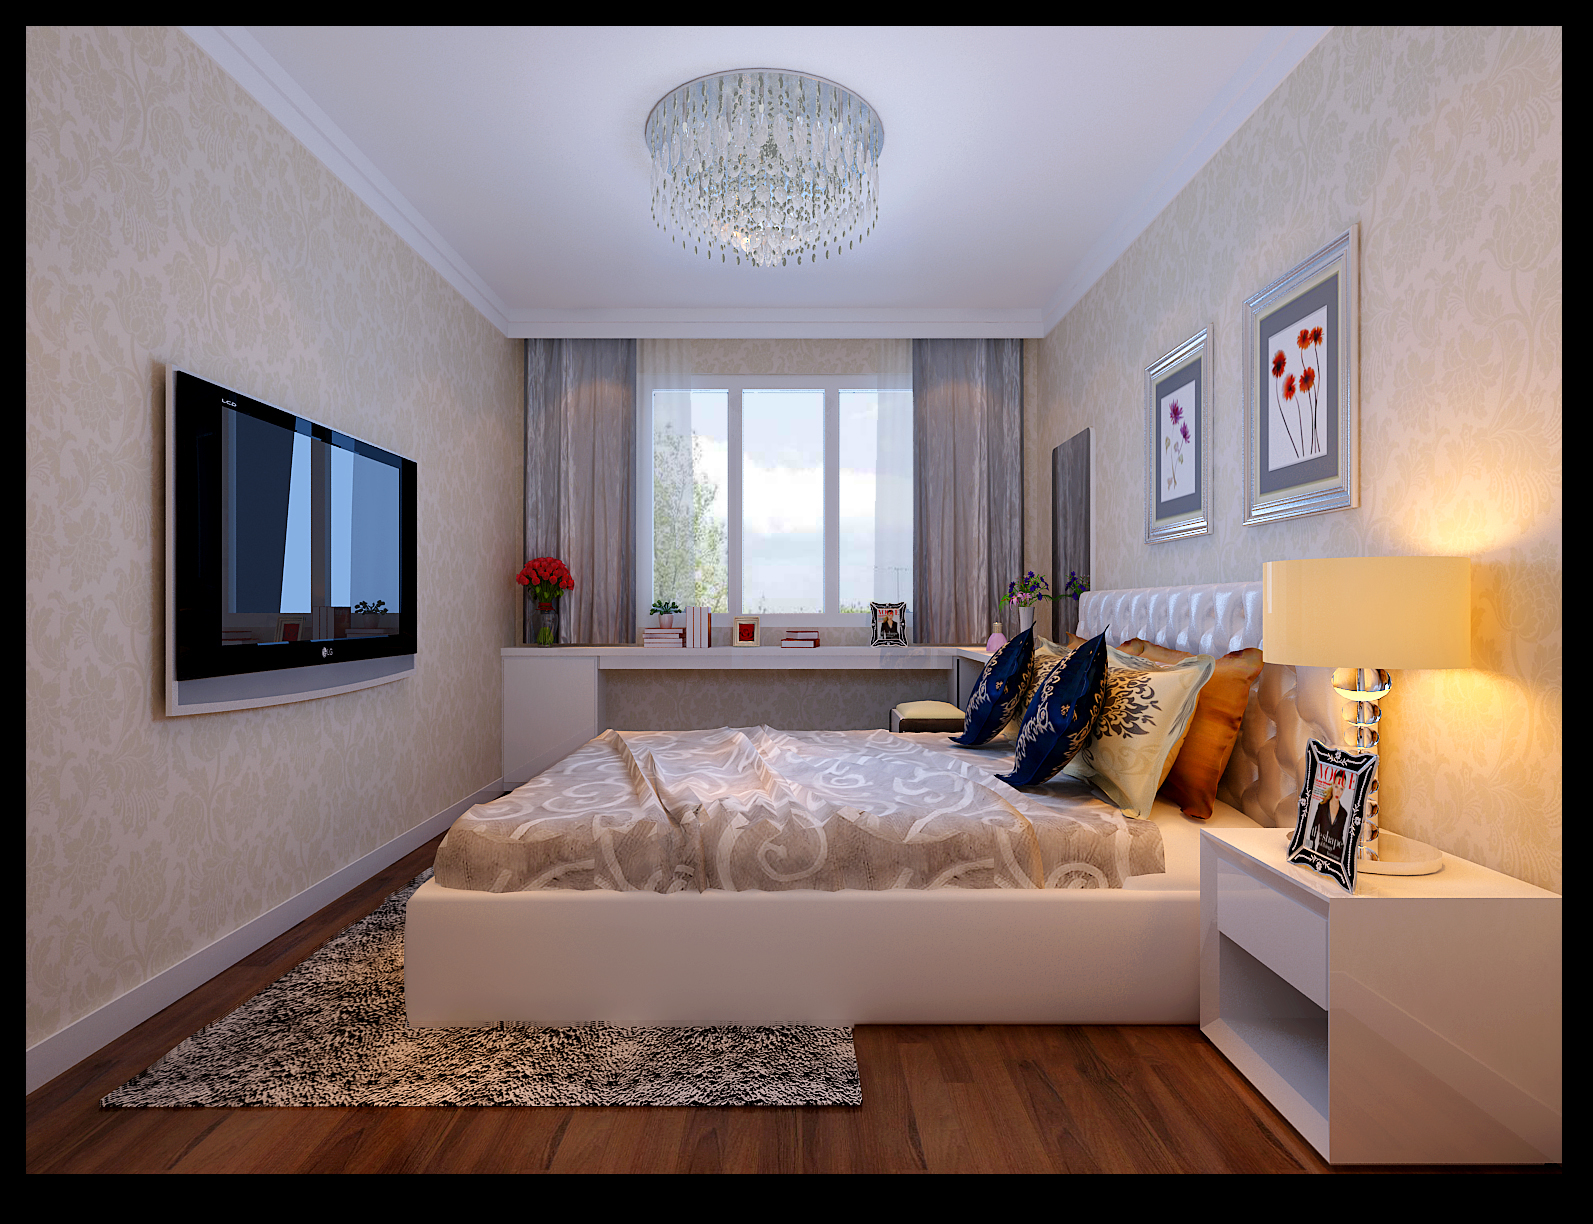 二居 简约 旧房改造 效果图 北京元洲 卧室图片来自榜眼2014在西城晶华67平米老房改造的分享